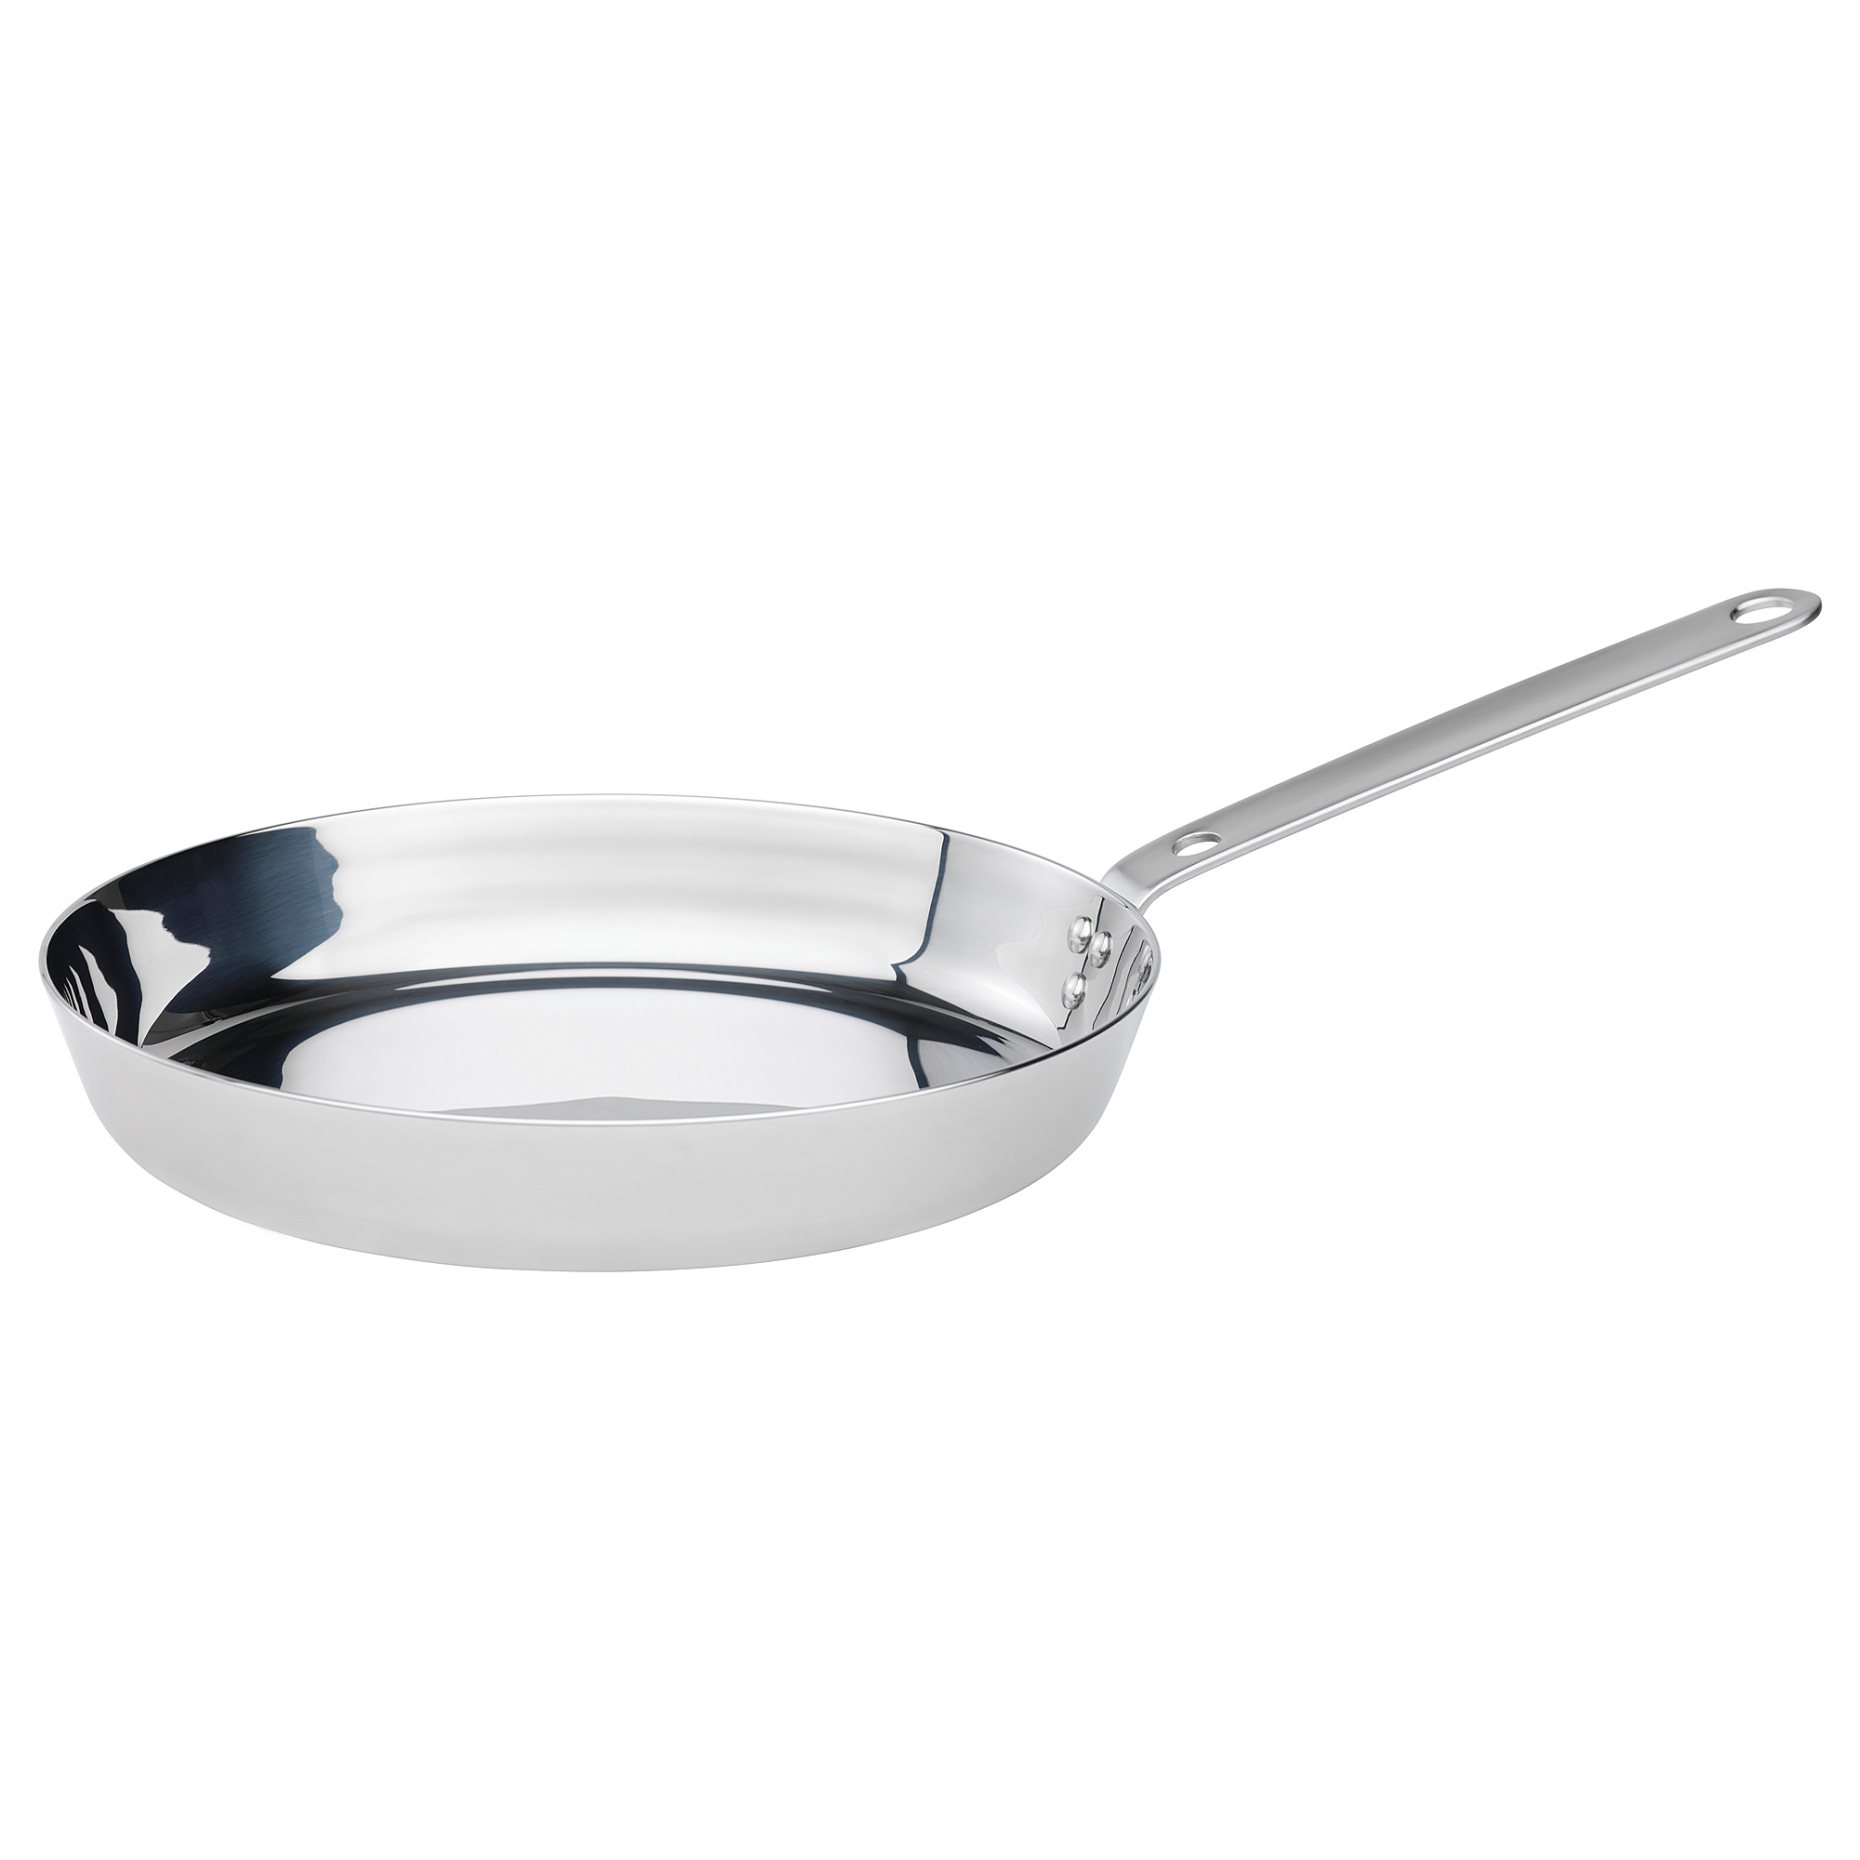 HEMKOMST, frying pan, 28 cm, 505.557.09